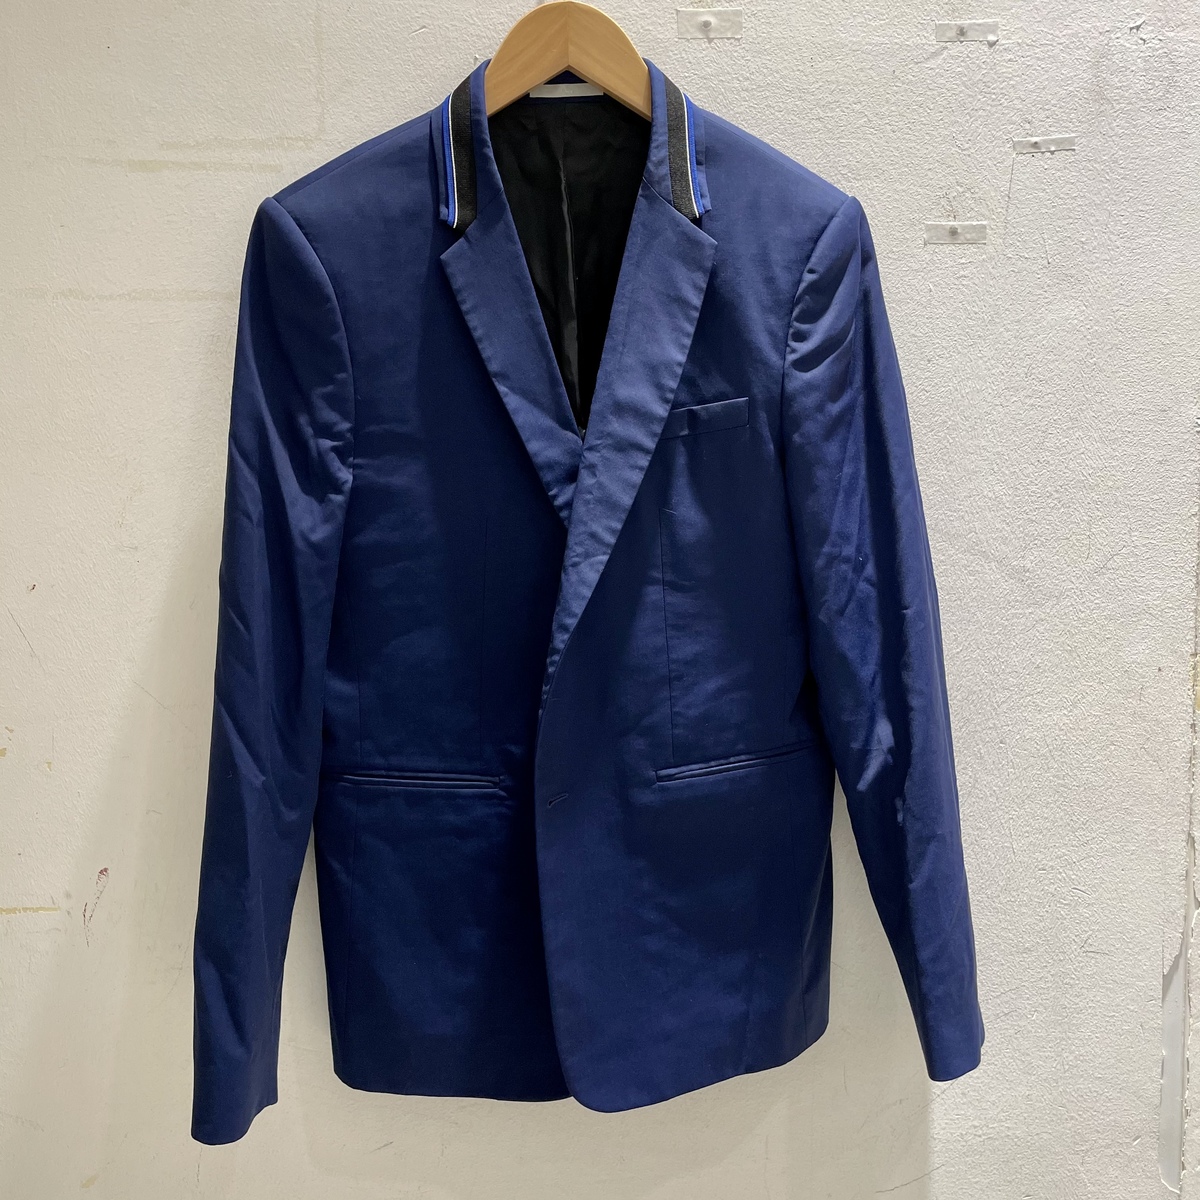 ディオールオムのブルー 2017年春夏 ウール テーラードジャケットの買取実績です。